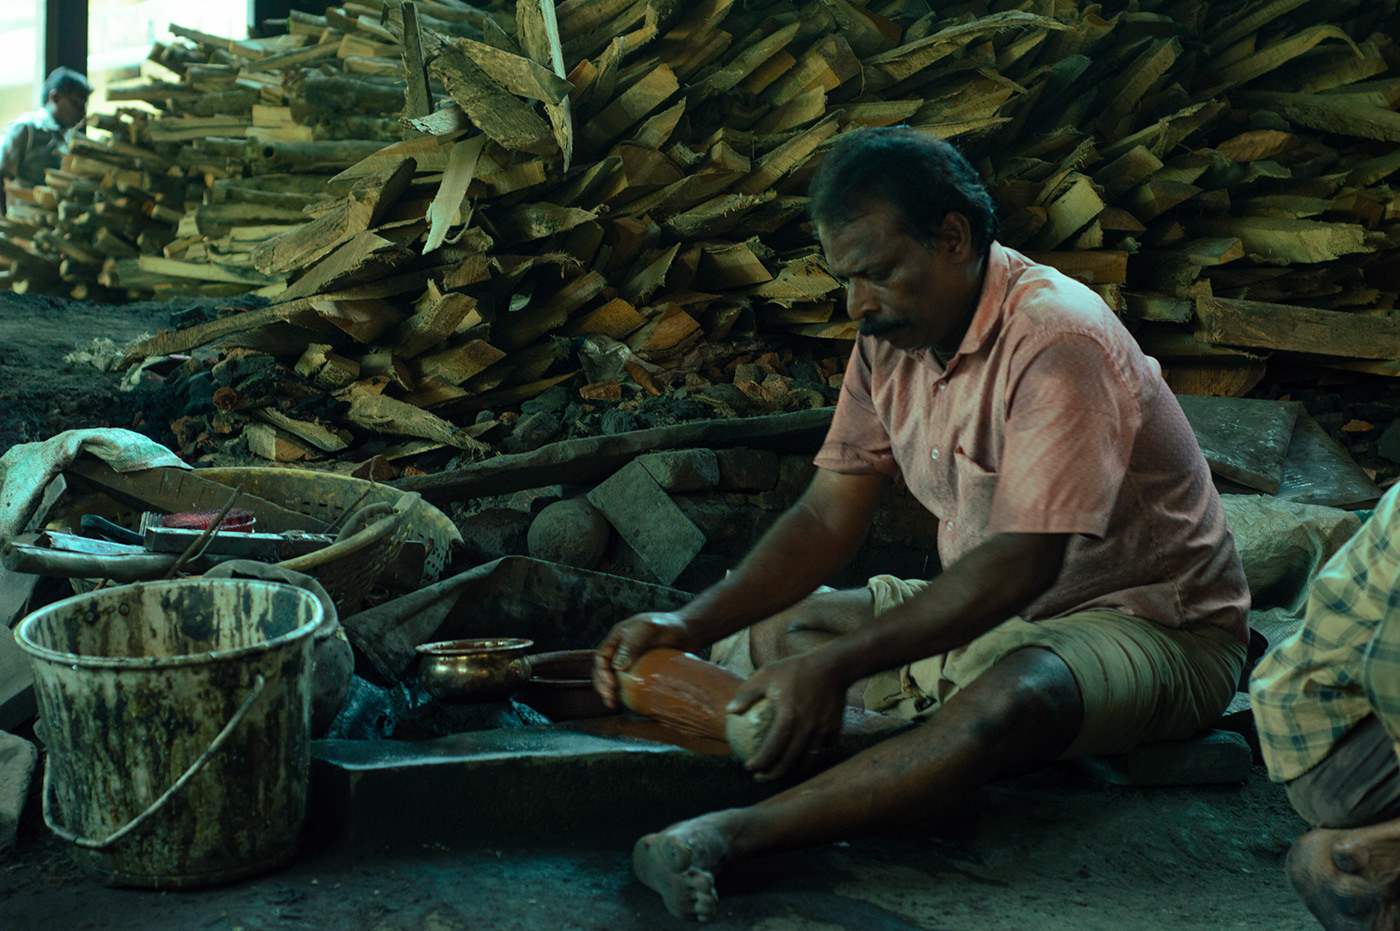 kerala kerala tourism handicraft artisan Blacksmith dark India traditional Art and Craft metalwork